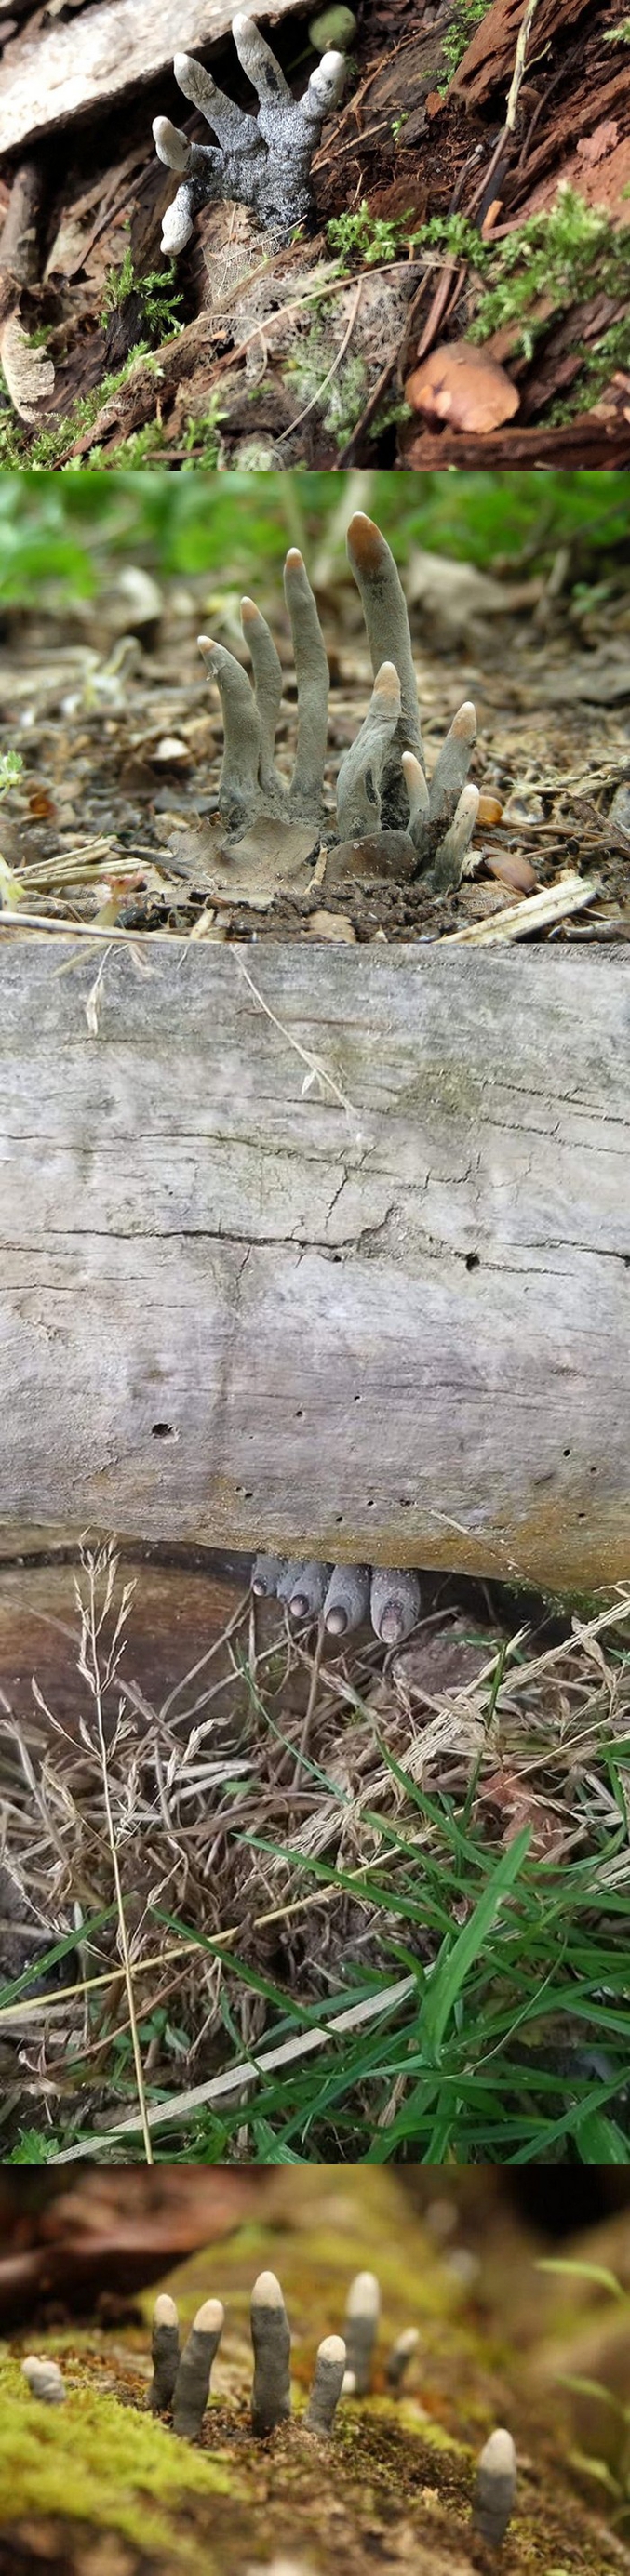 Le xylaire polymorphe est un champignon qui se trouve sur les bois morts de feuillus, il est aussi appelé "doigt de l'homme mort".